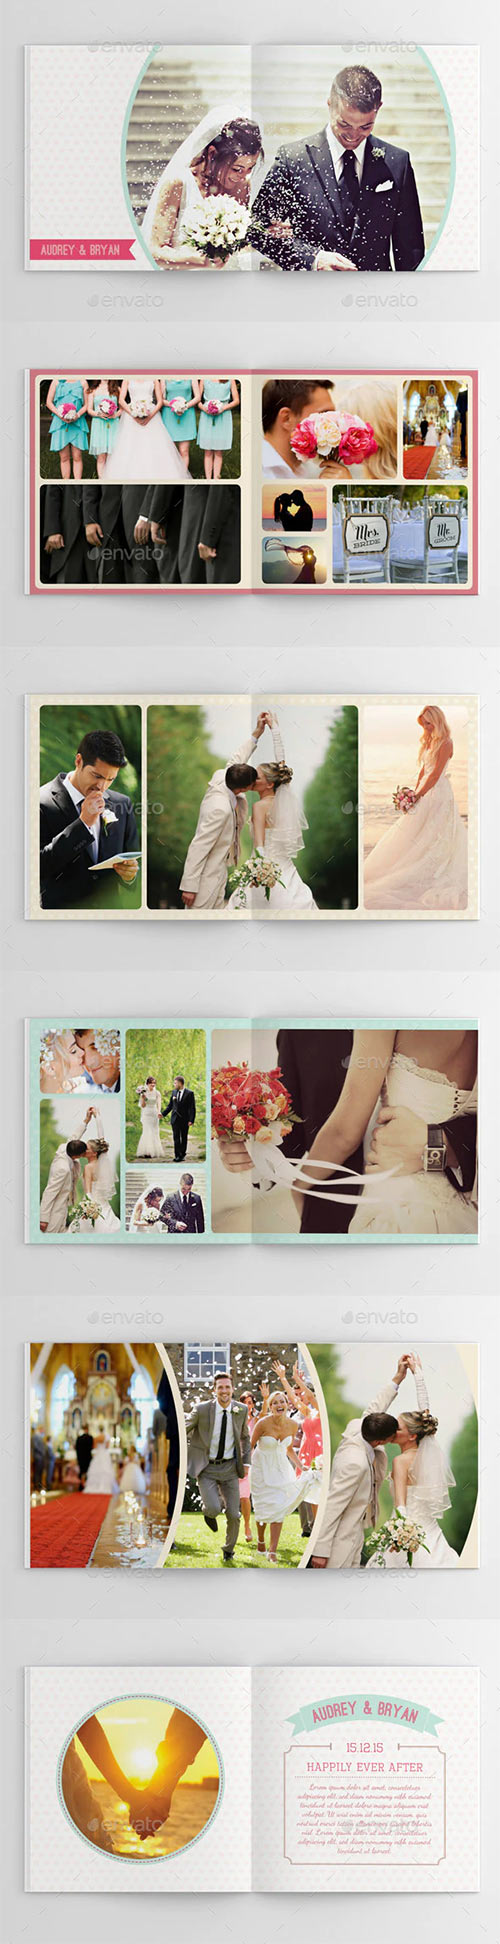 Sweet Wedding Photobook 9868855